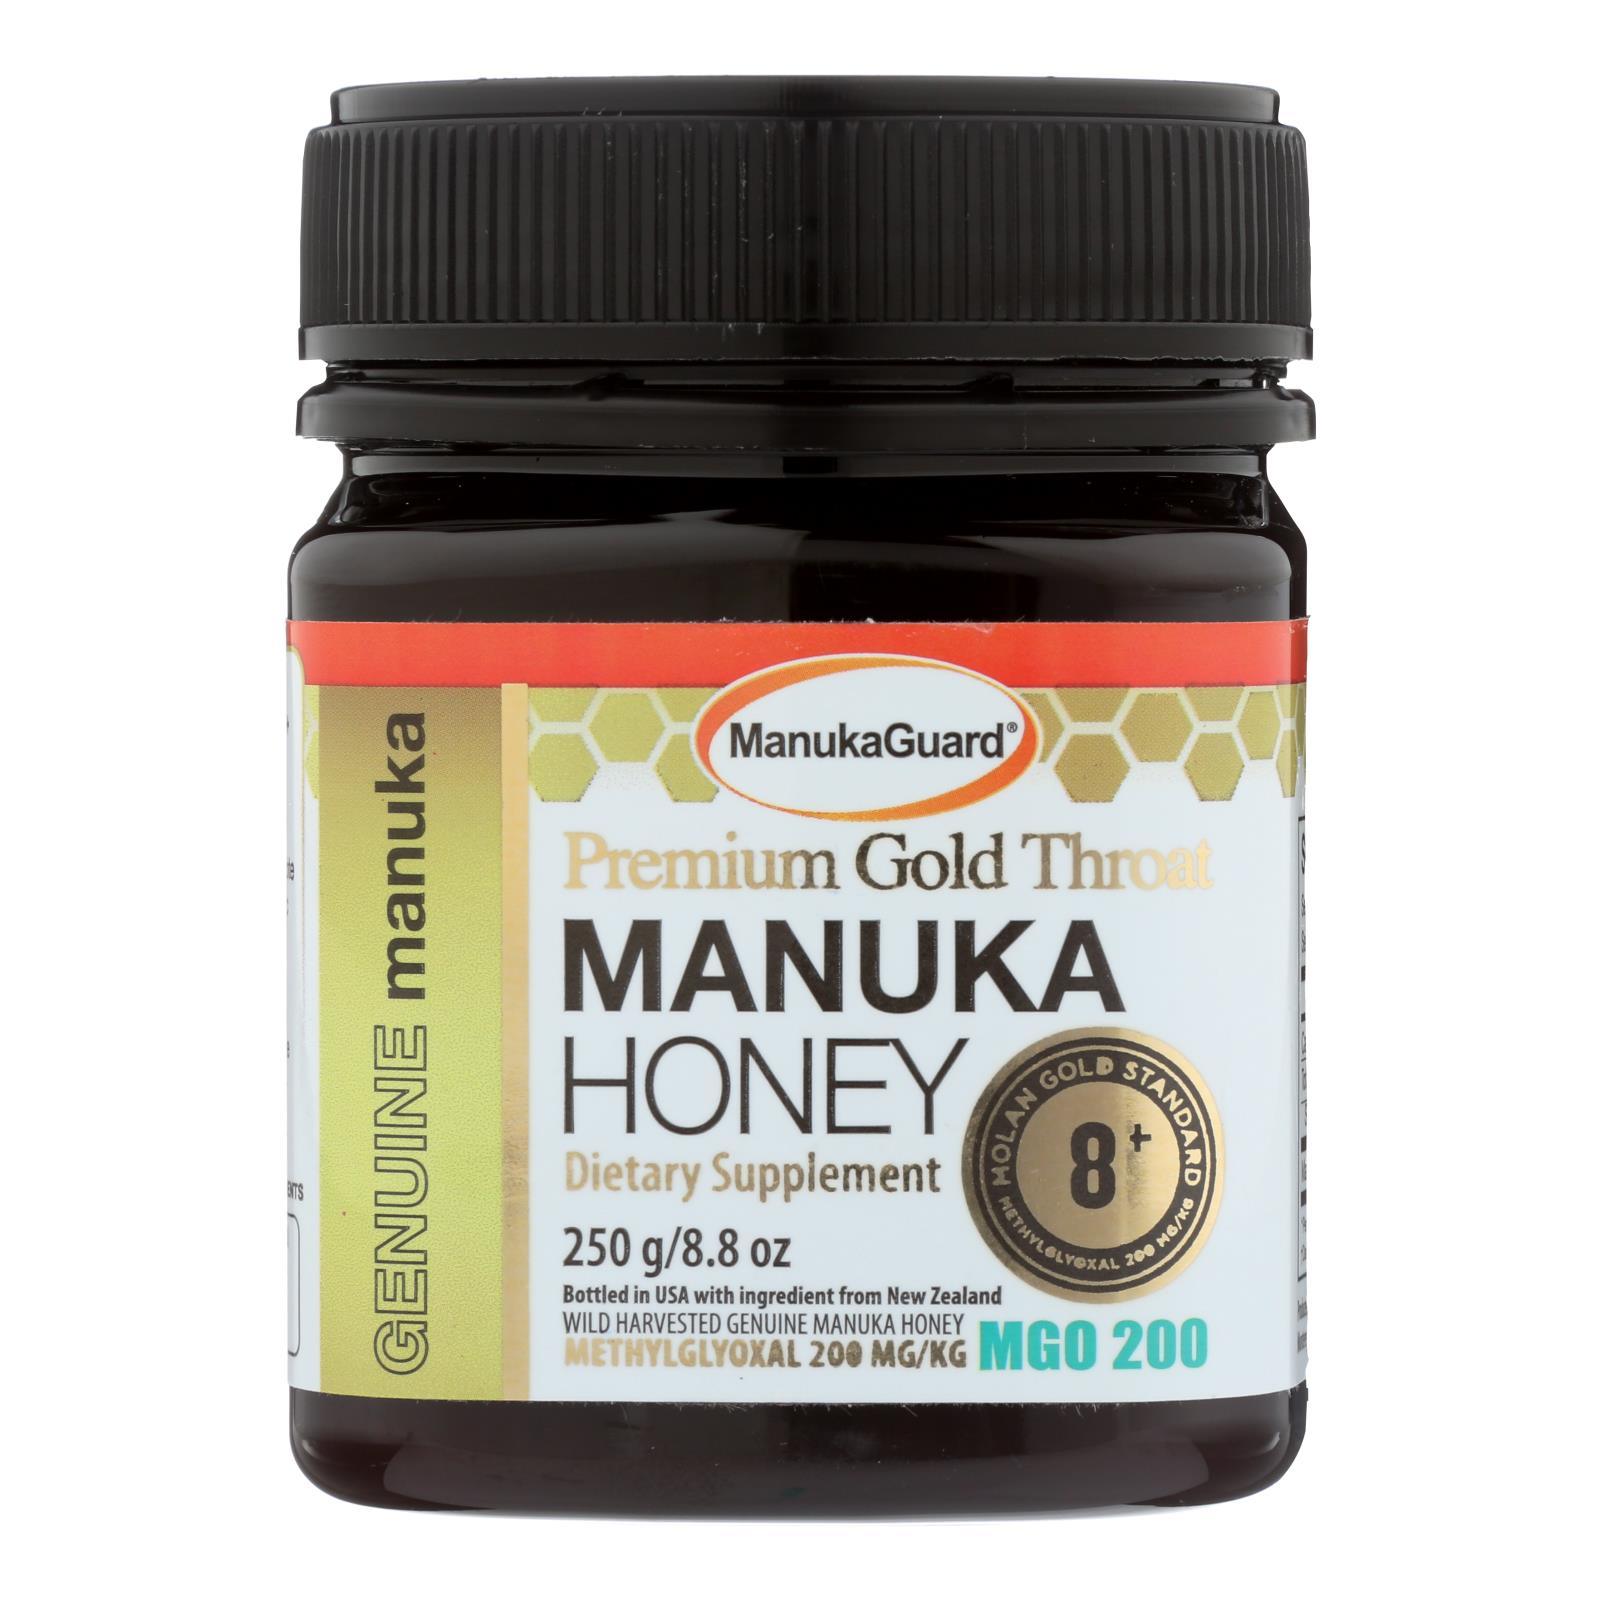 Image of the Manukaguard - Manuka Honey Prem Gold product.